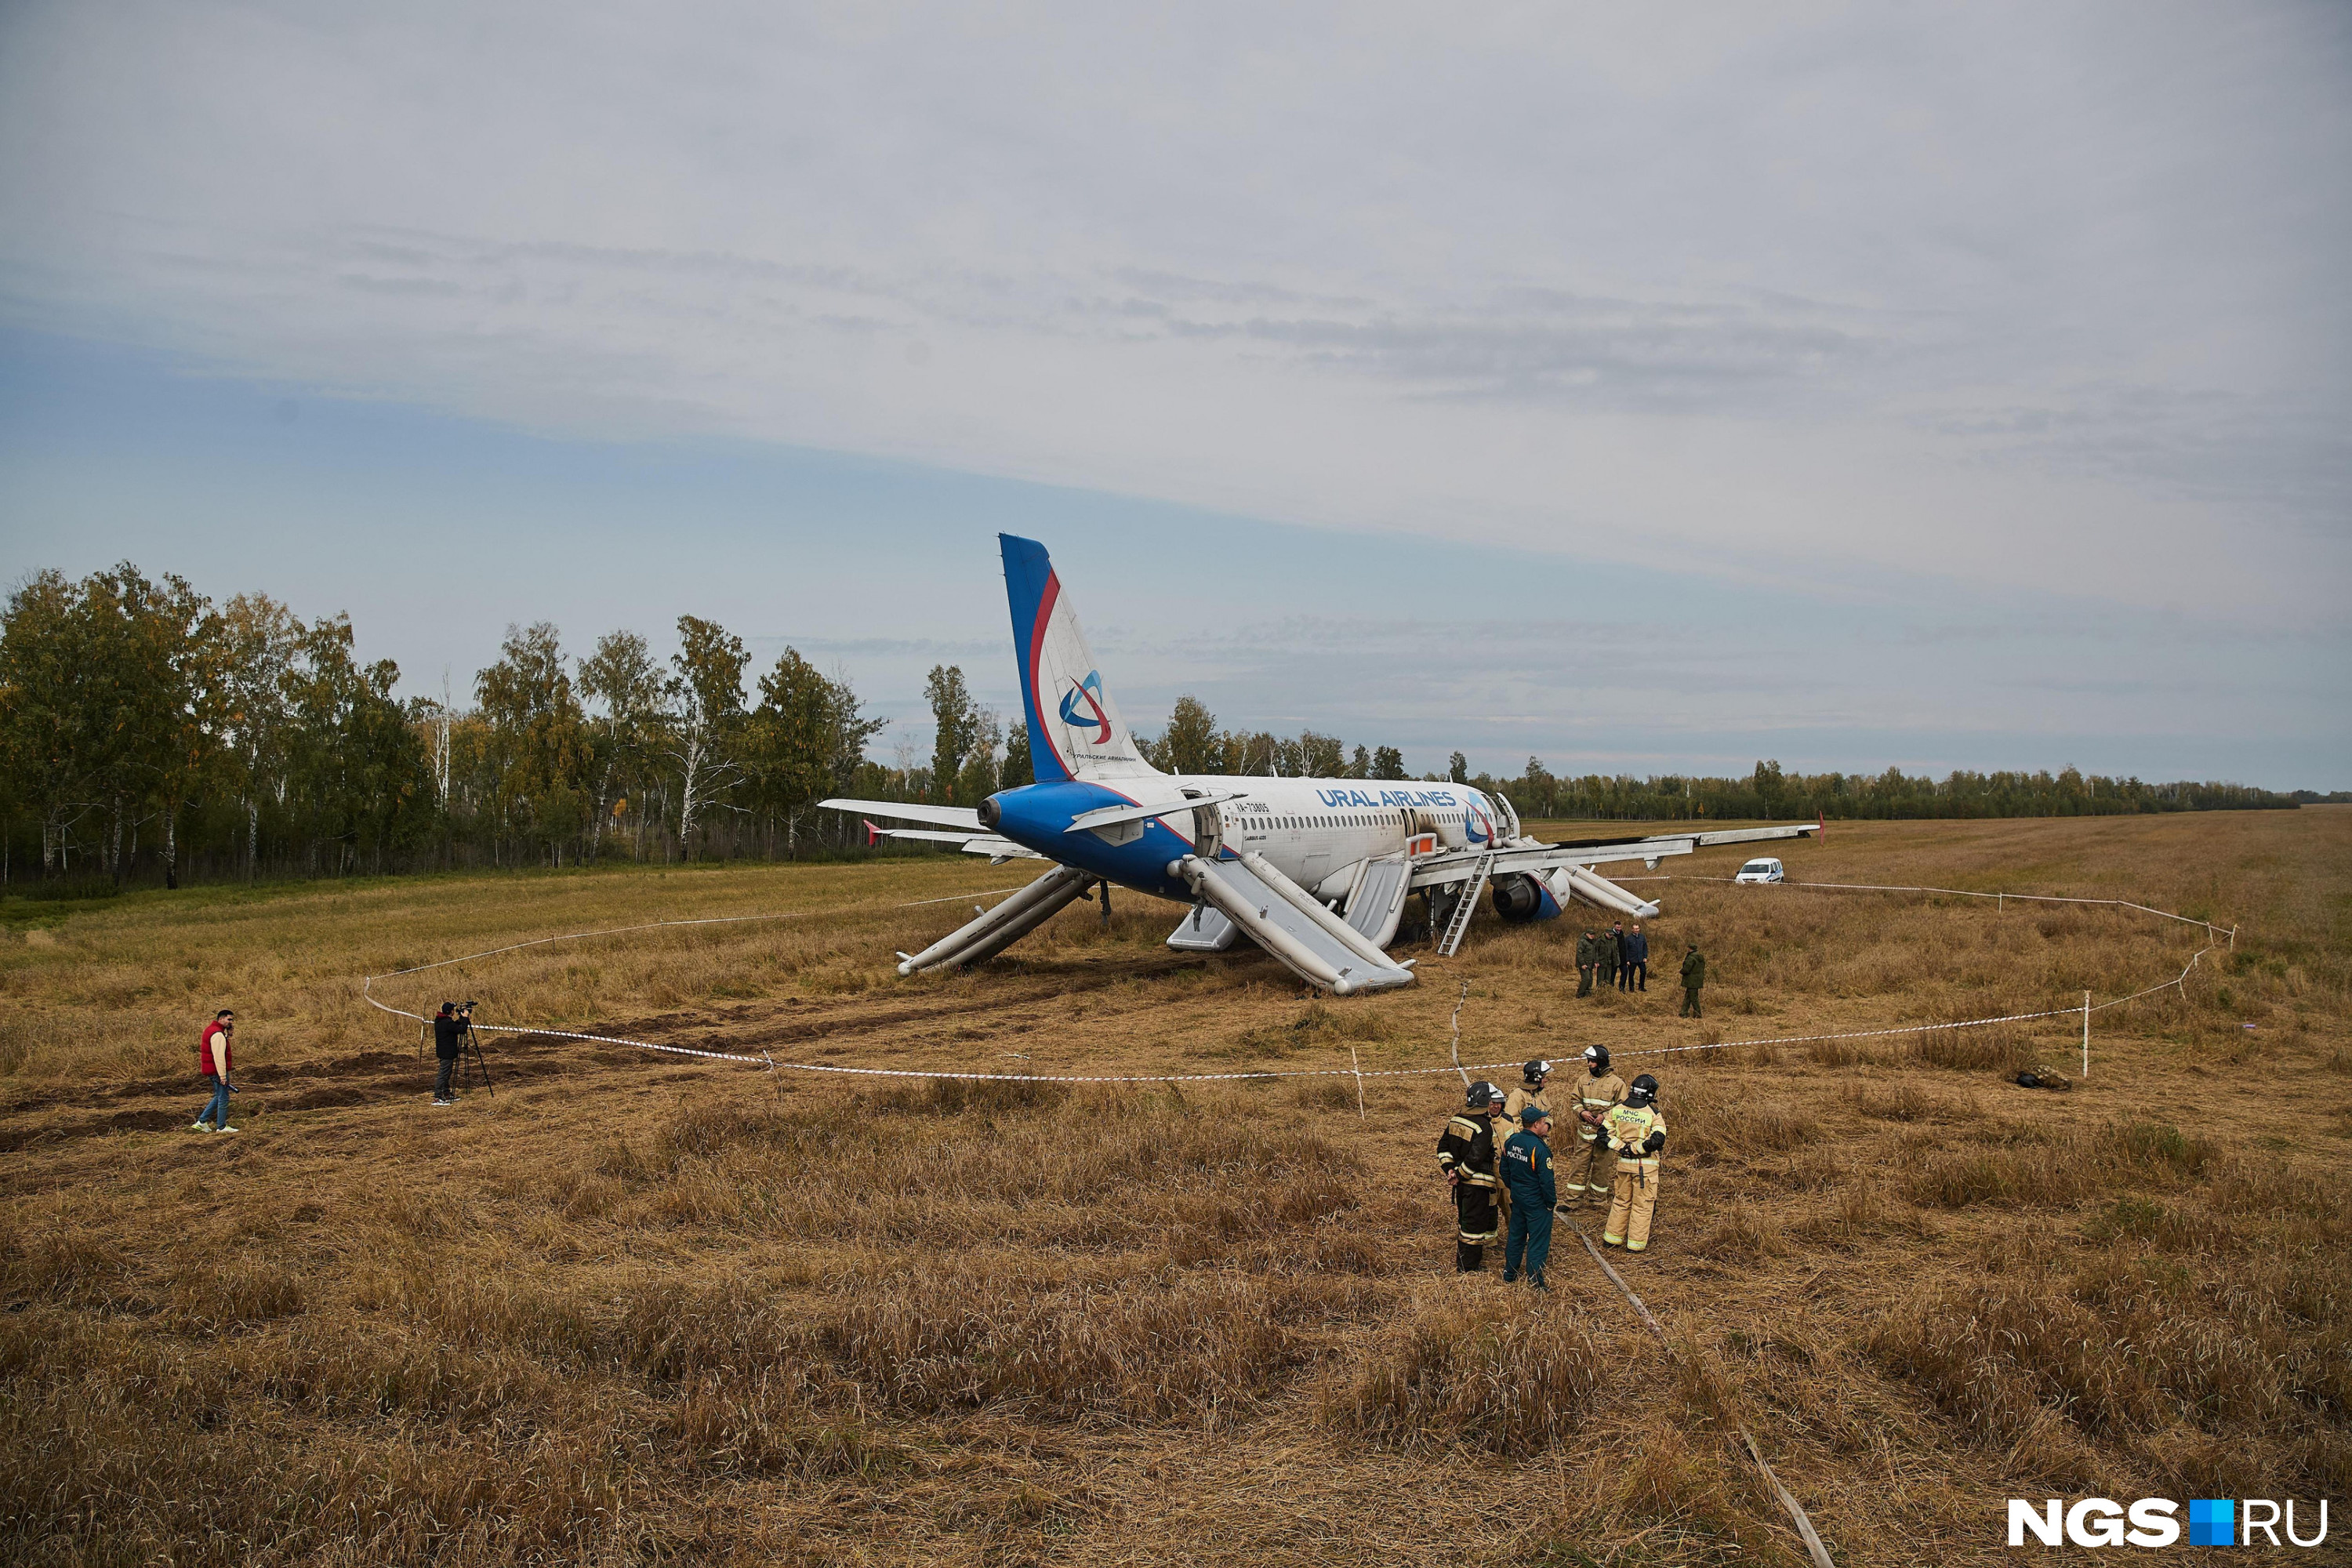 Руководство авиакомпании считает, что самолет, застрявший в новосибирском поле, <a href="https://www.e1.ru/text/incidents/2023/09/22/72733064/" class="_" target="_blank">еще будет летать</a>